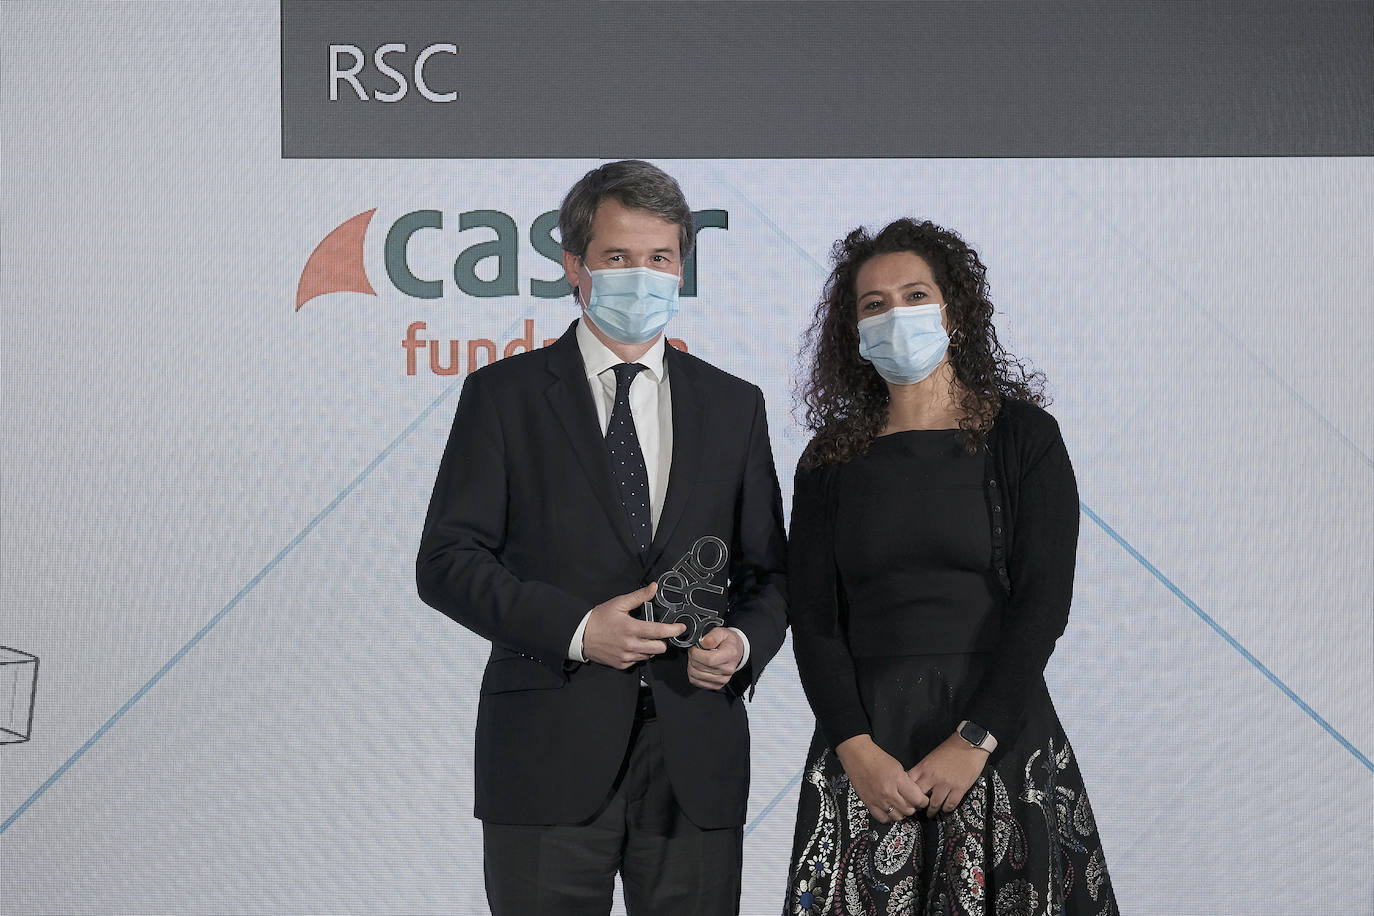 Lorena Rodríguez Barreal, directora general de recursos humanos y organización de Vocento, entrega el premio a Juan Sitges Breiter, director de la Fundación Caser.